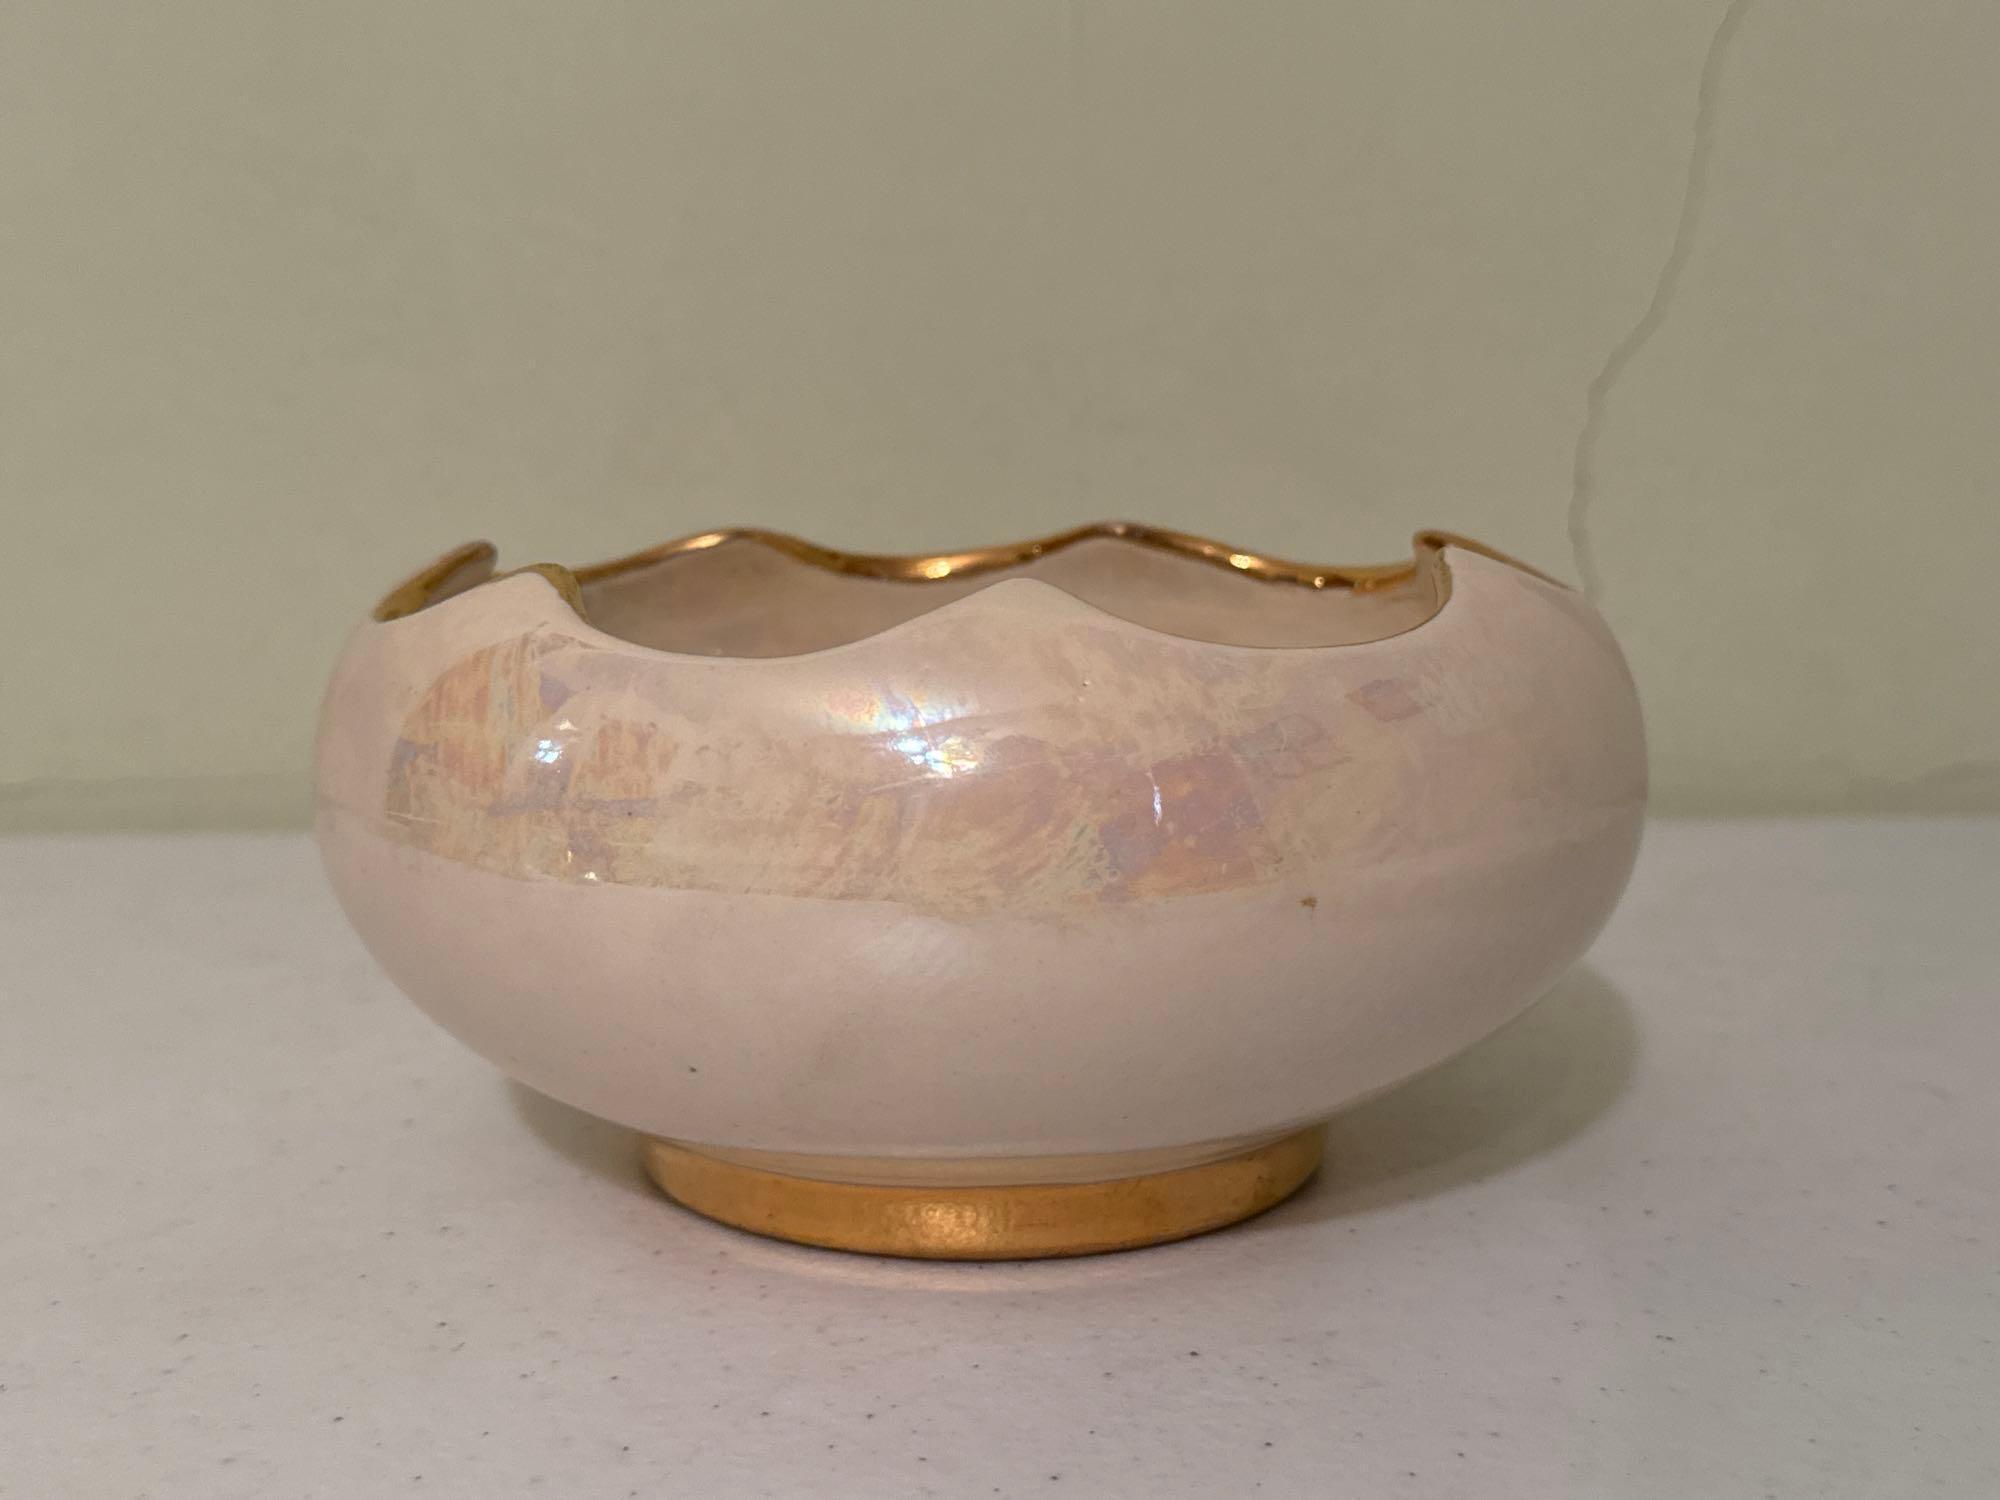 Vintage Limoges Golden Bowl, Hand Painted Iridescent Bowl, Sugar Bowl & Creamer